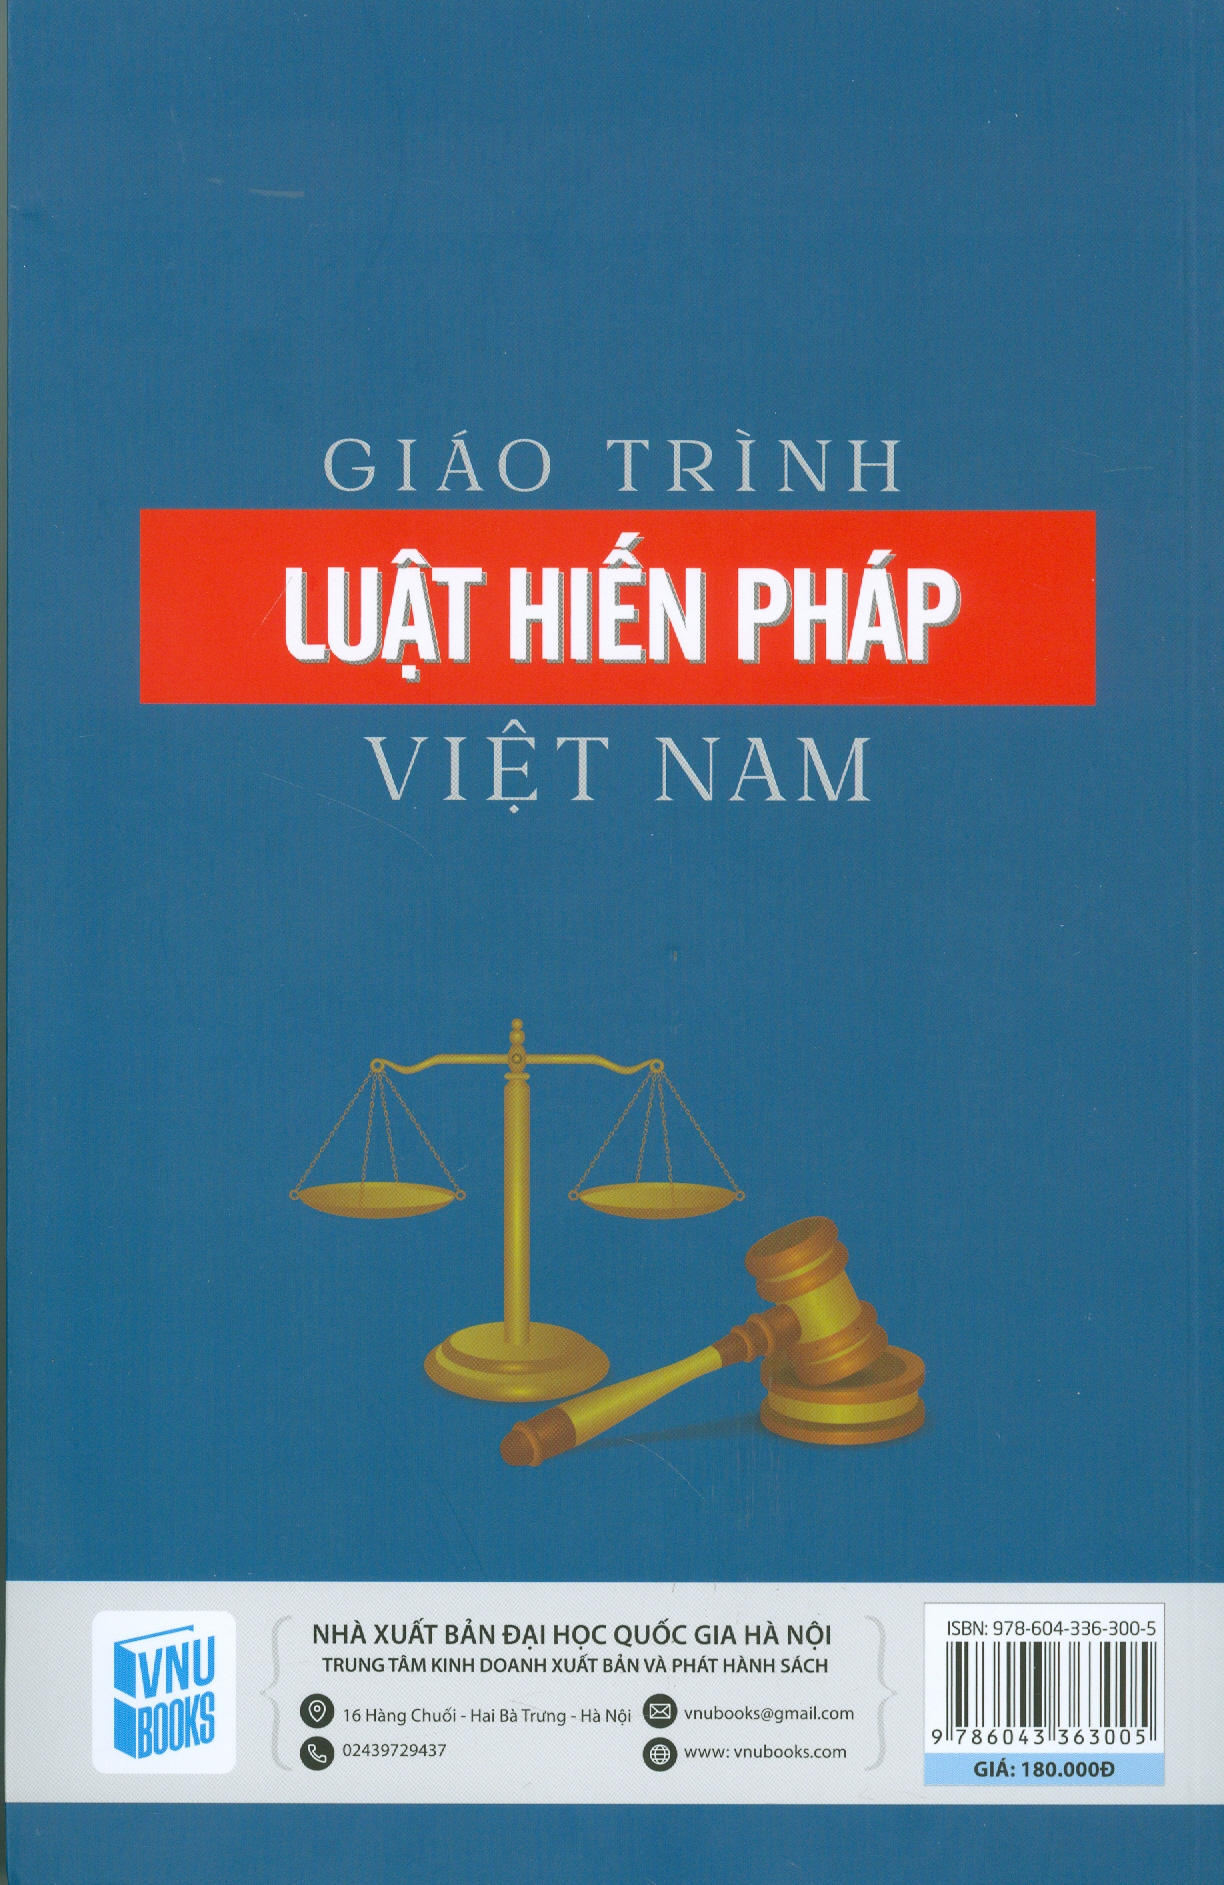 Giáo Trình Luật Hiếp Pháp Việt Nam